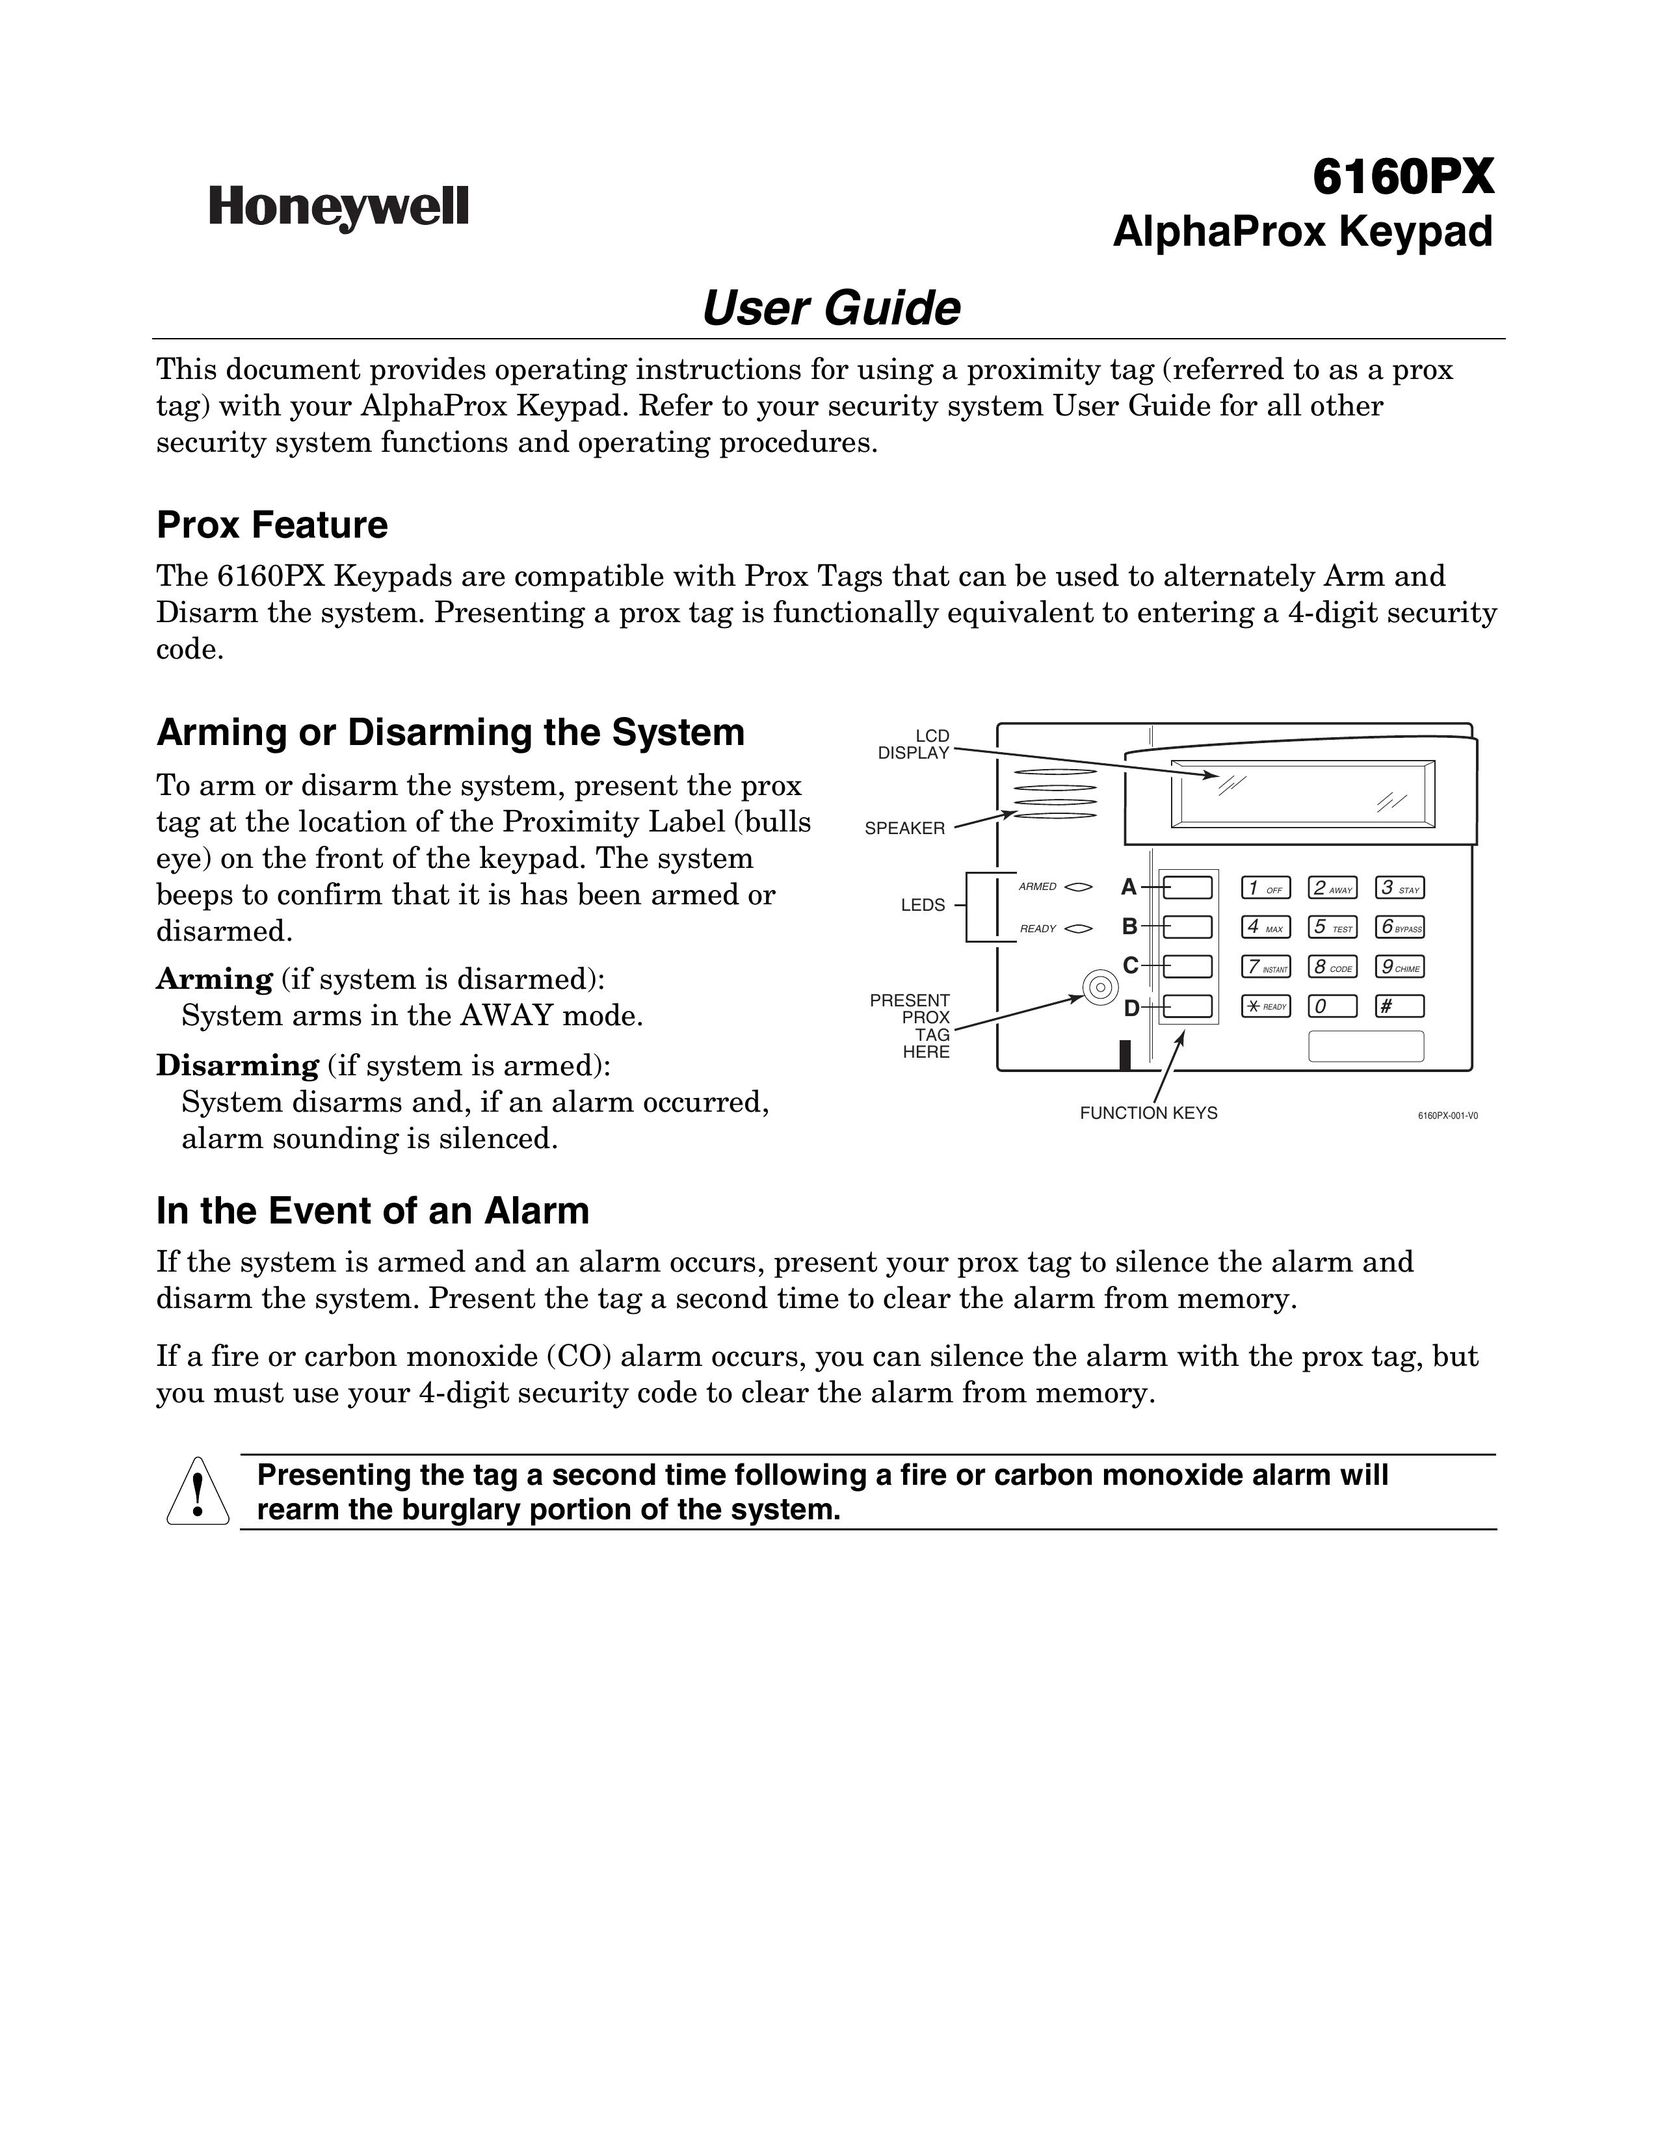 Honeywell 6160PX Door User Manual